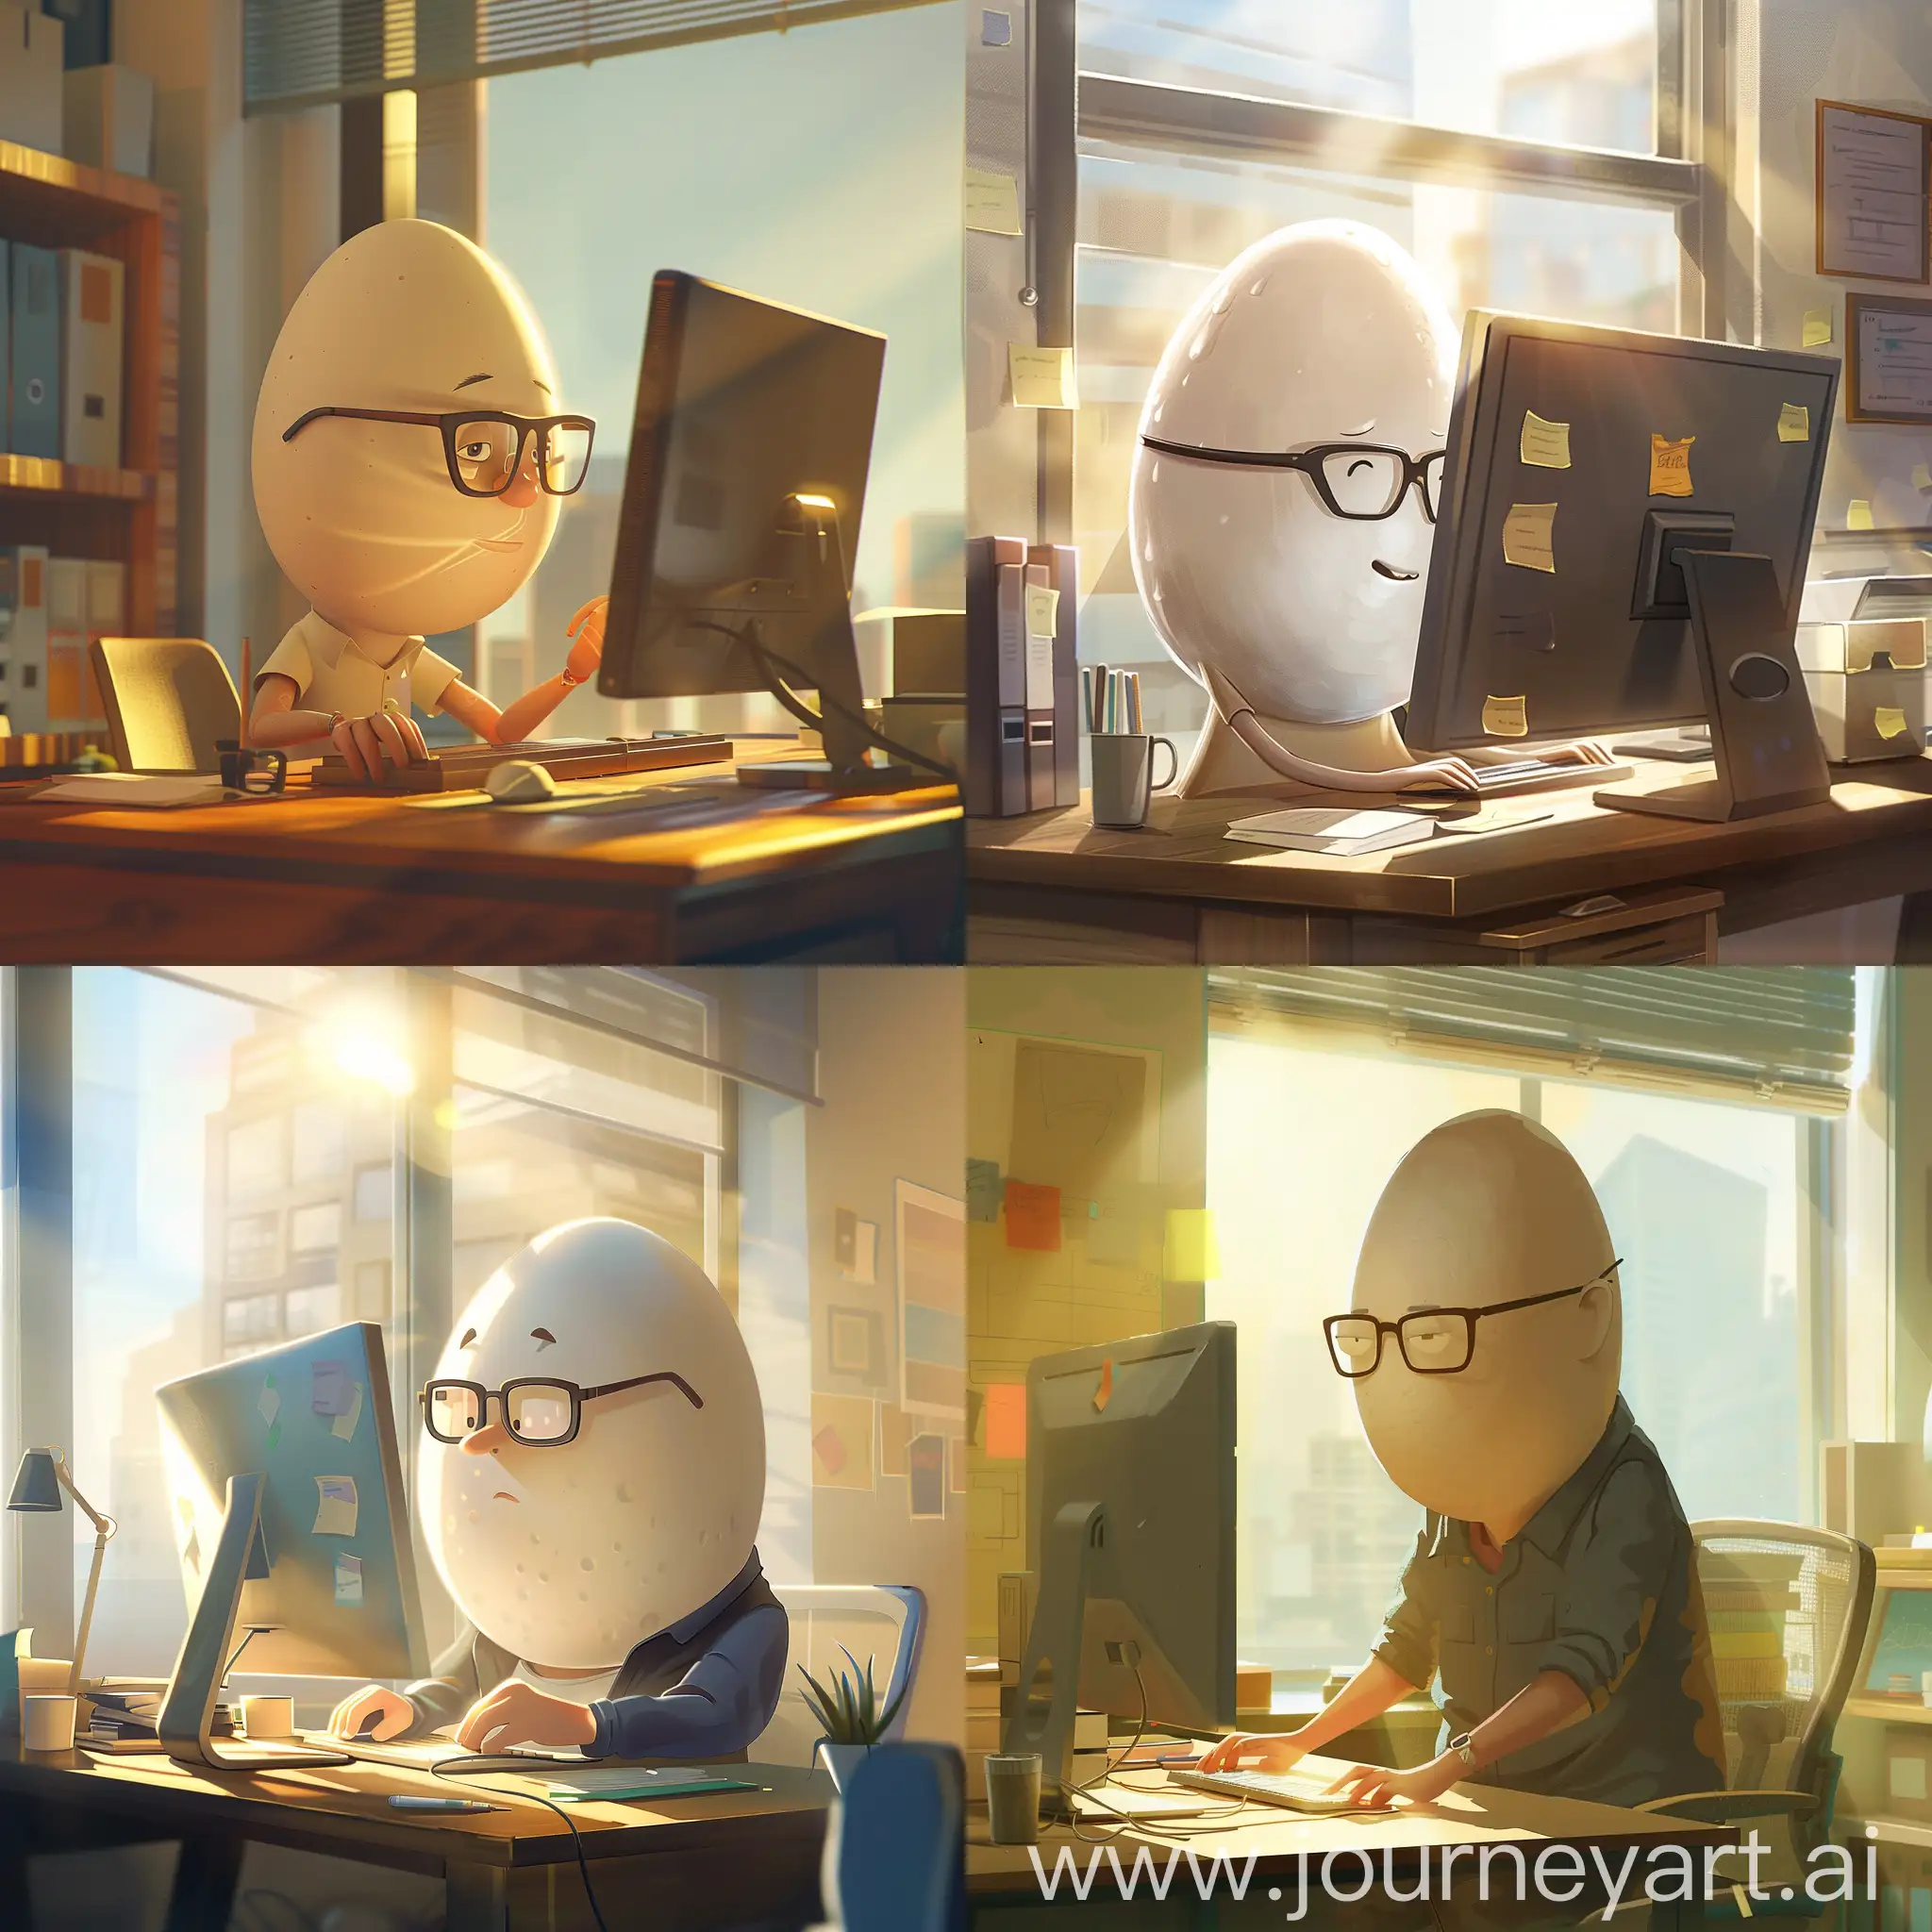 一个戴眼镜的鹅蛋脸程序员，在电脑上敲代码，阳光照进办公室的窗口，动画风格